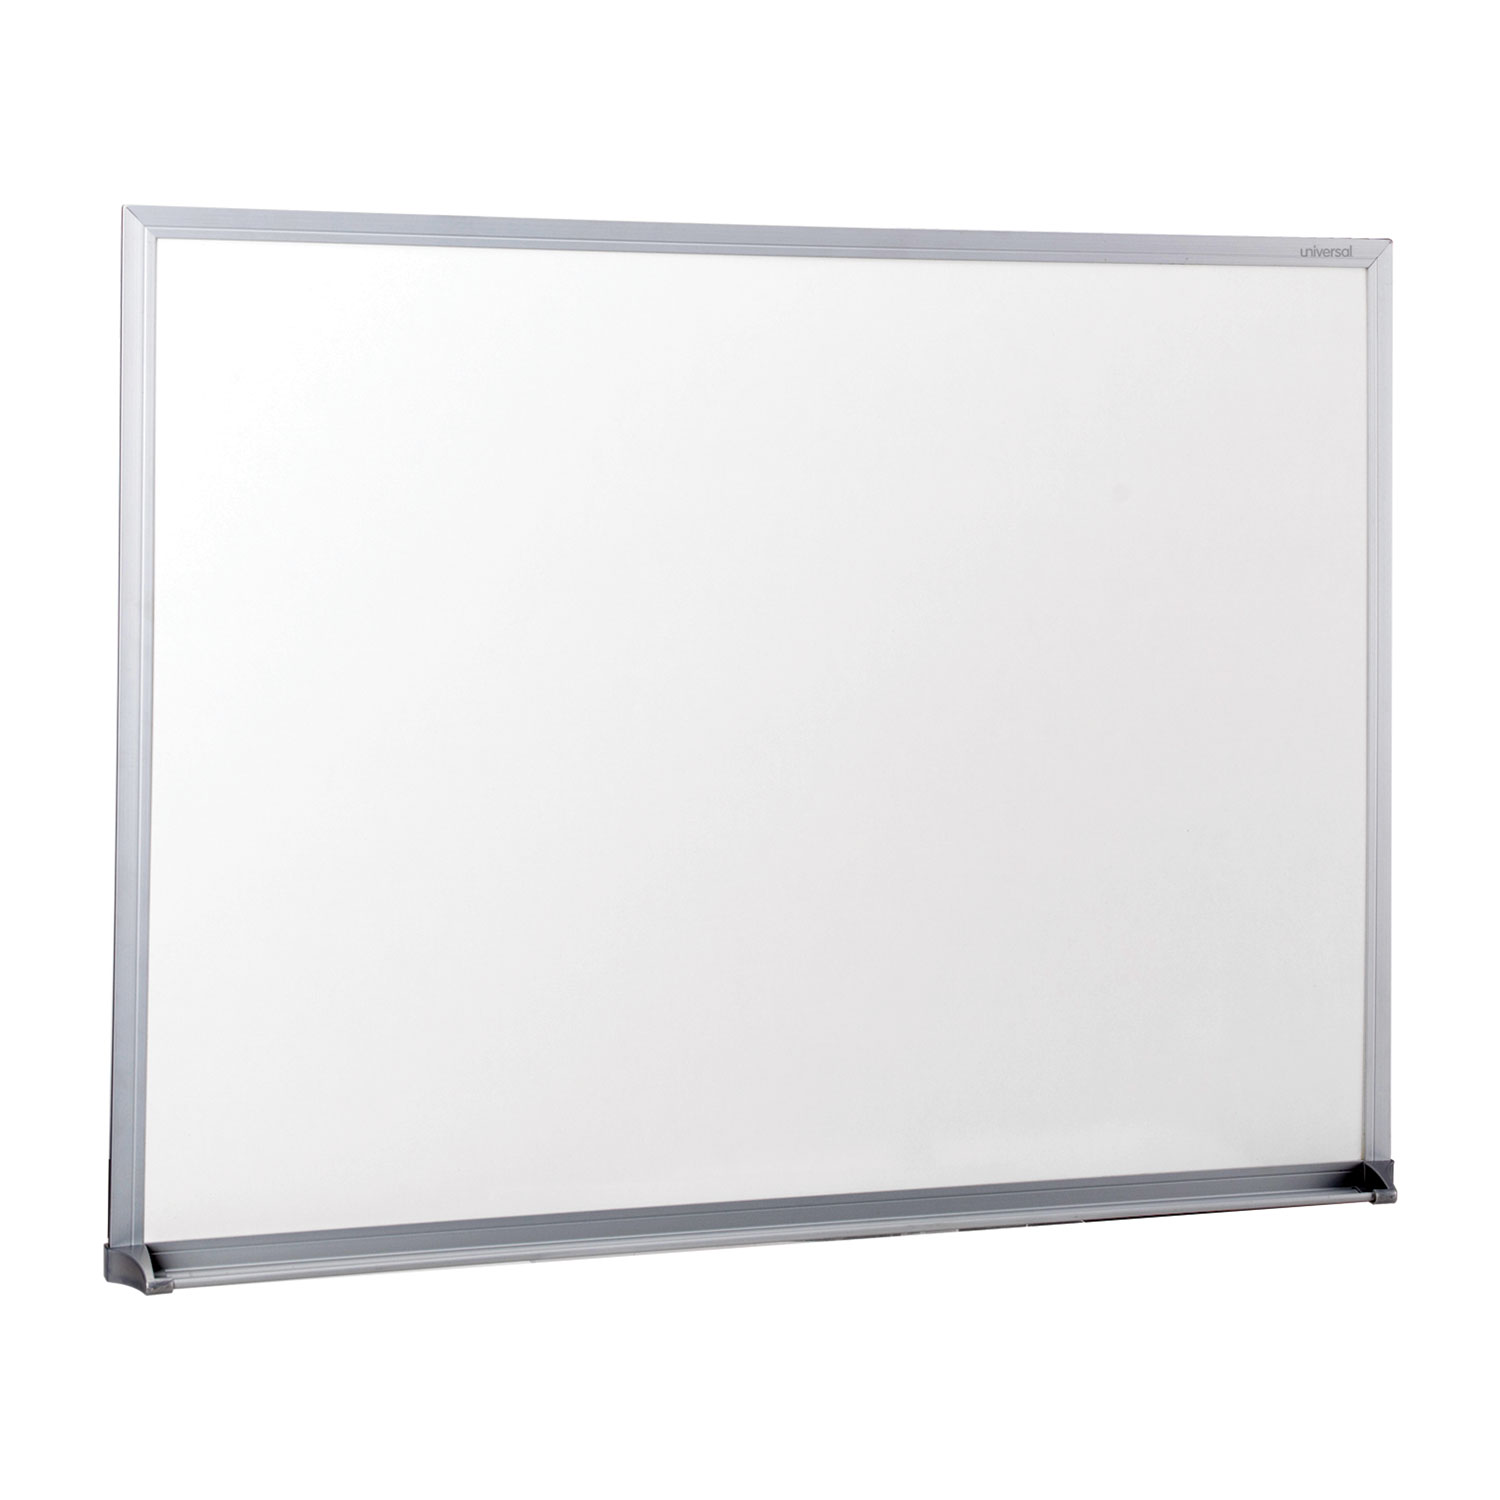 Dry-Erase Board, Melamine, 24 x 18, Satin-Finished Aluminum Frame